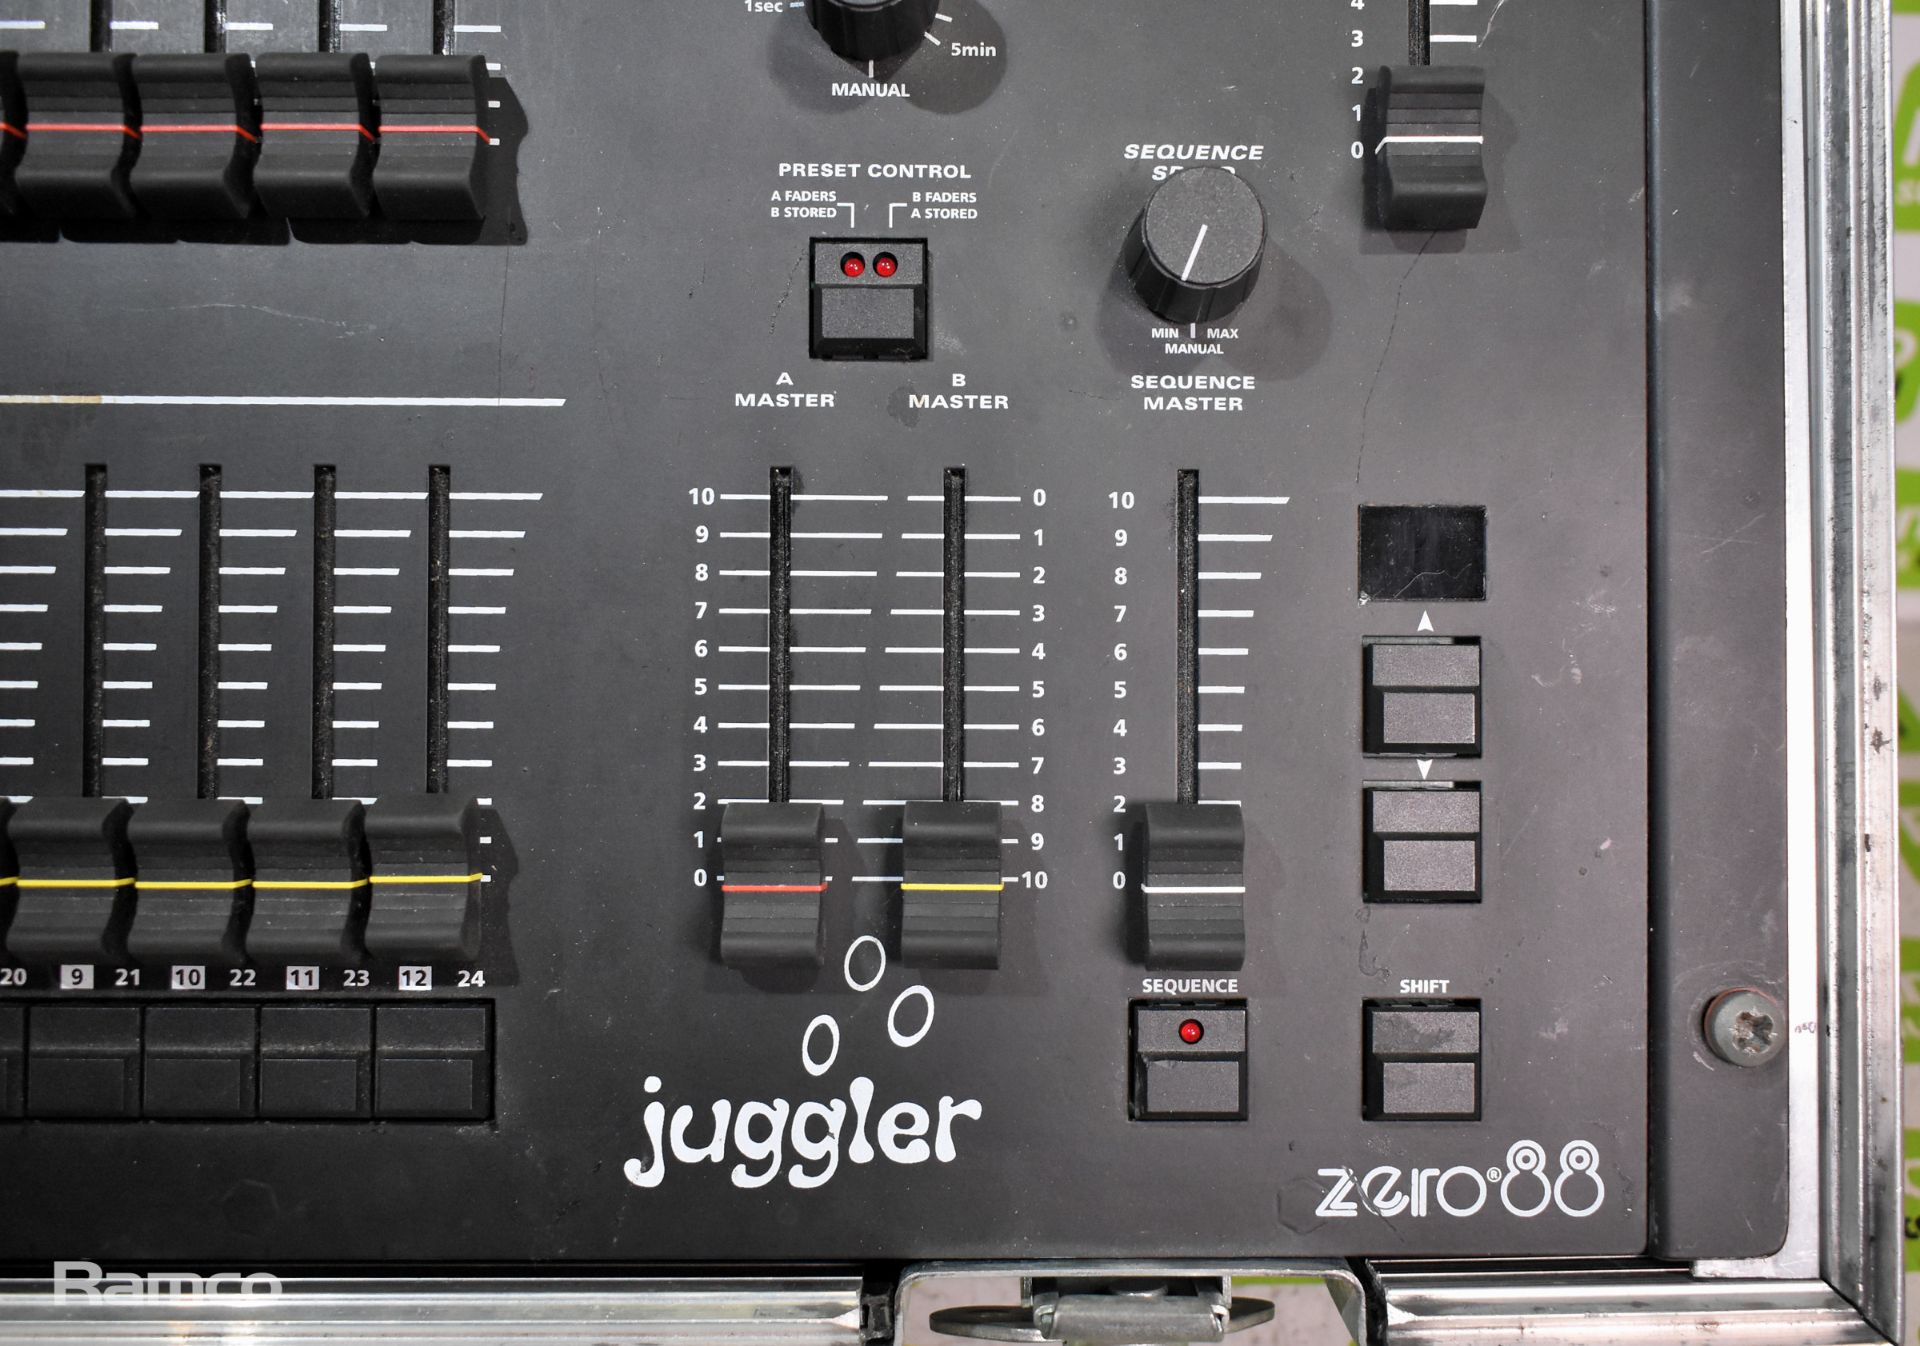 Zero88 Juggler 12/24 lighting control desk in flight case - Image 3 of 5